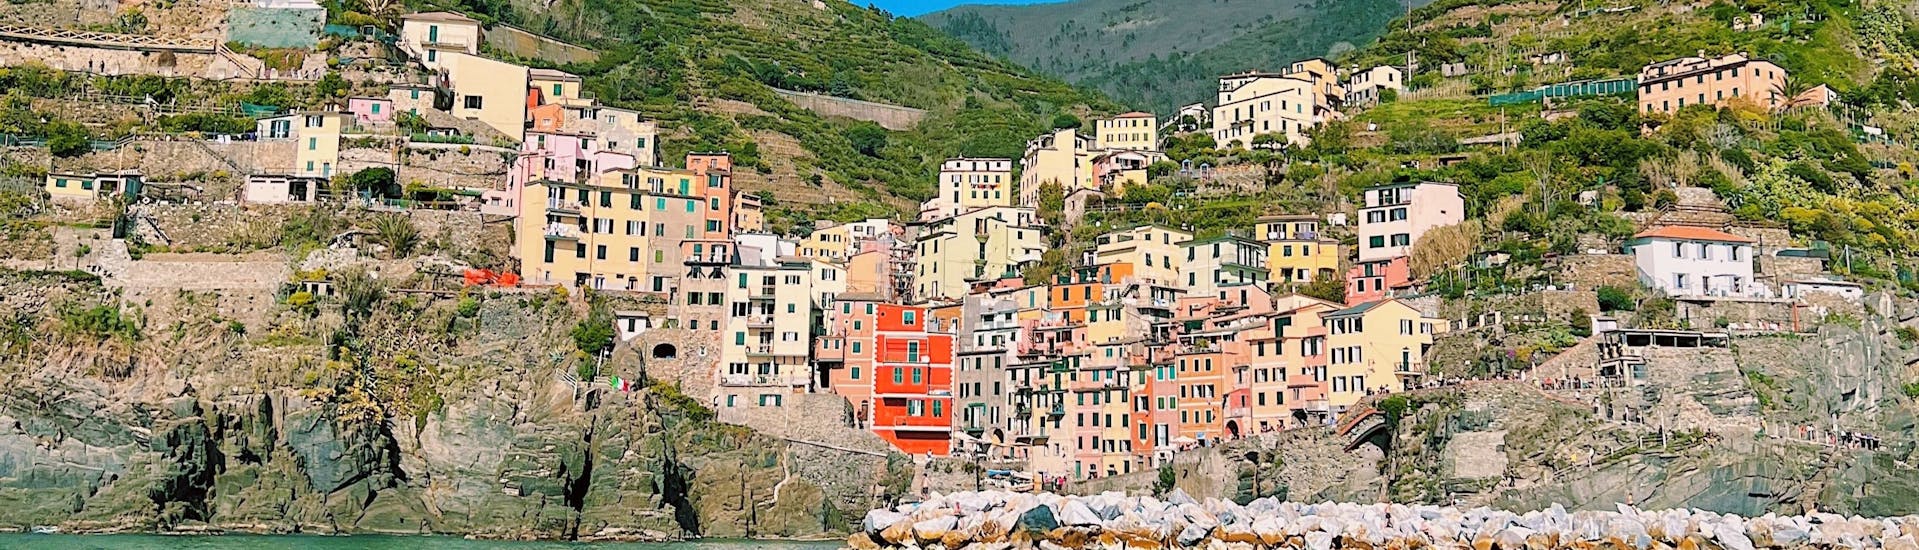 Riomaggiore vom Meer während der Segeltour von La Spezia nach Cinque Terre mit Mittagessen.